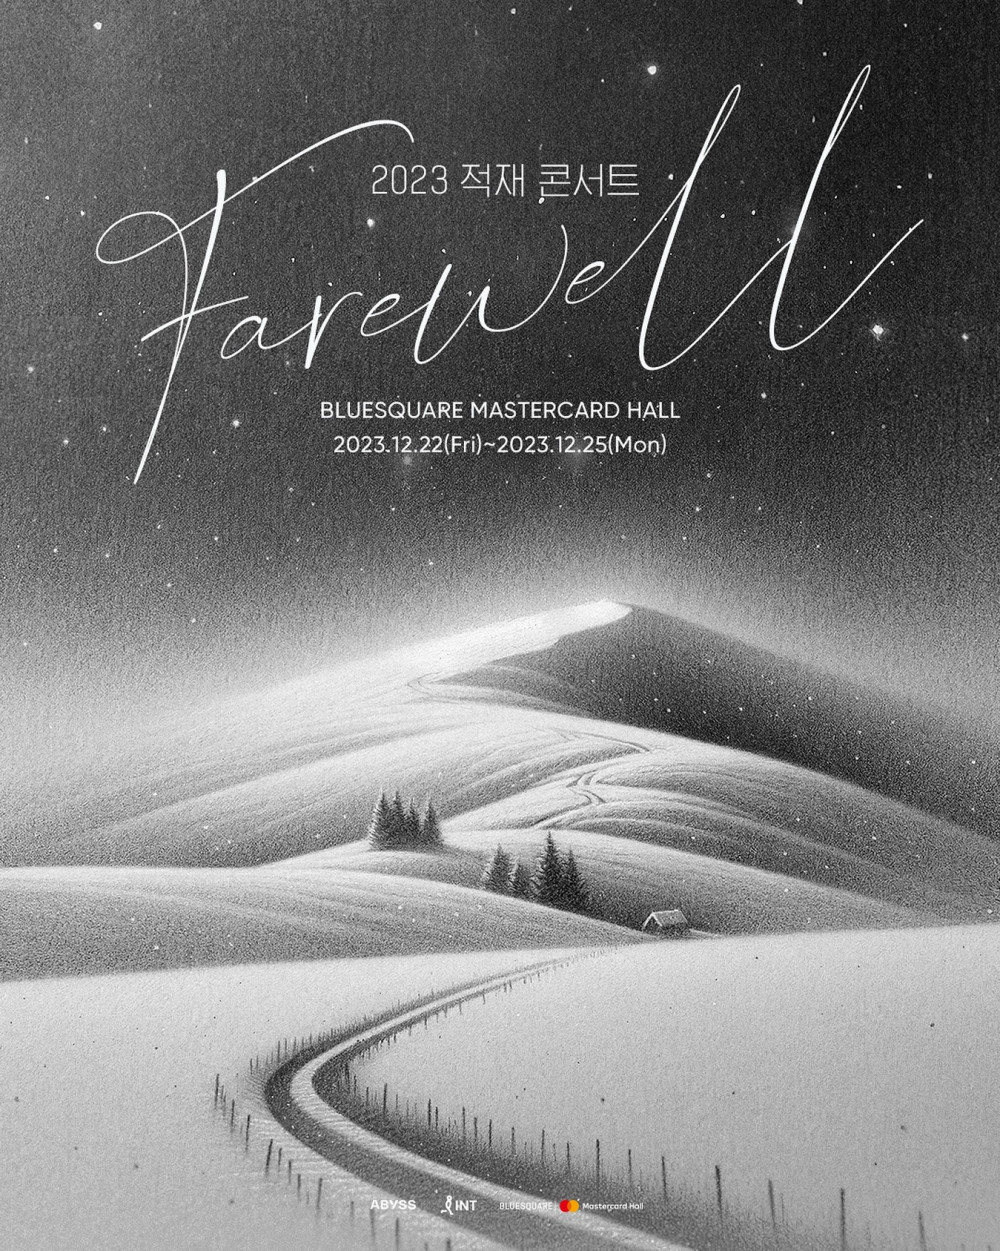 Чок Чэ проведет серию зимних концертов «Farewell» 2023 года